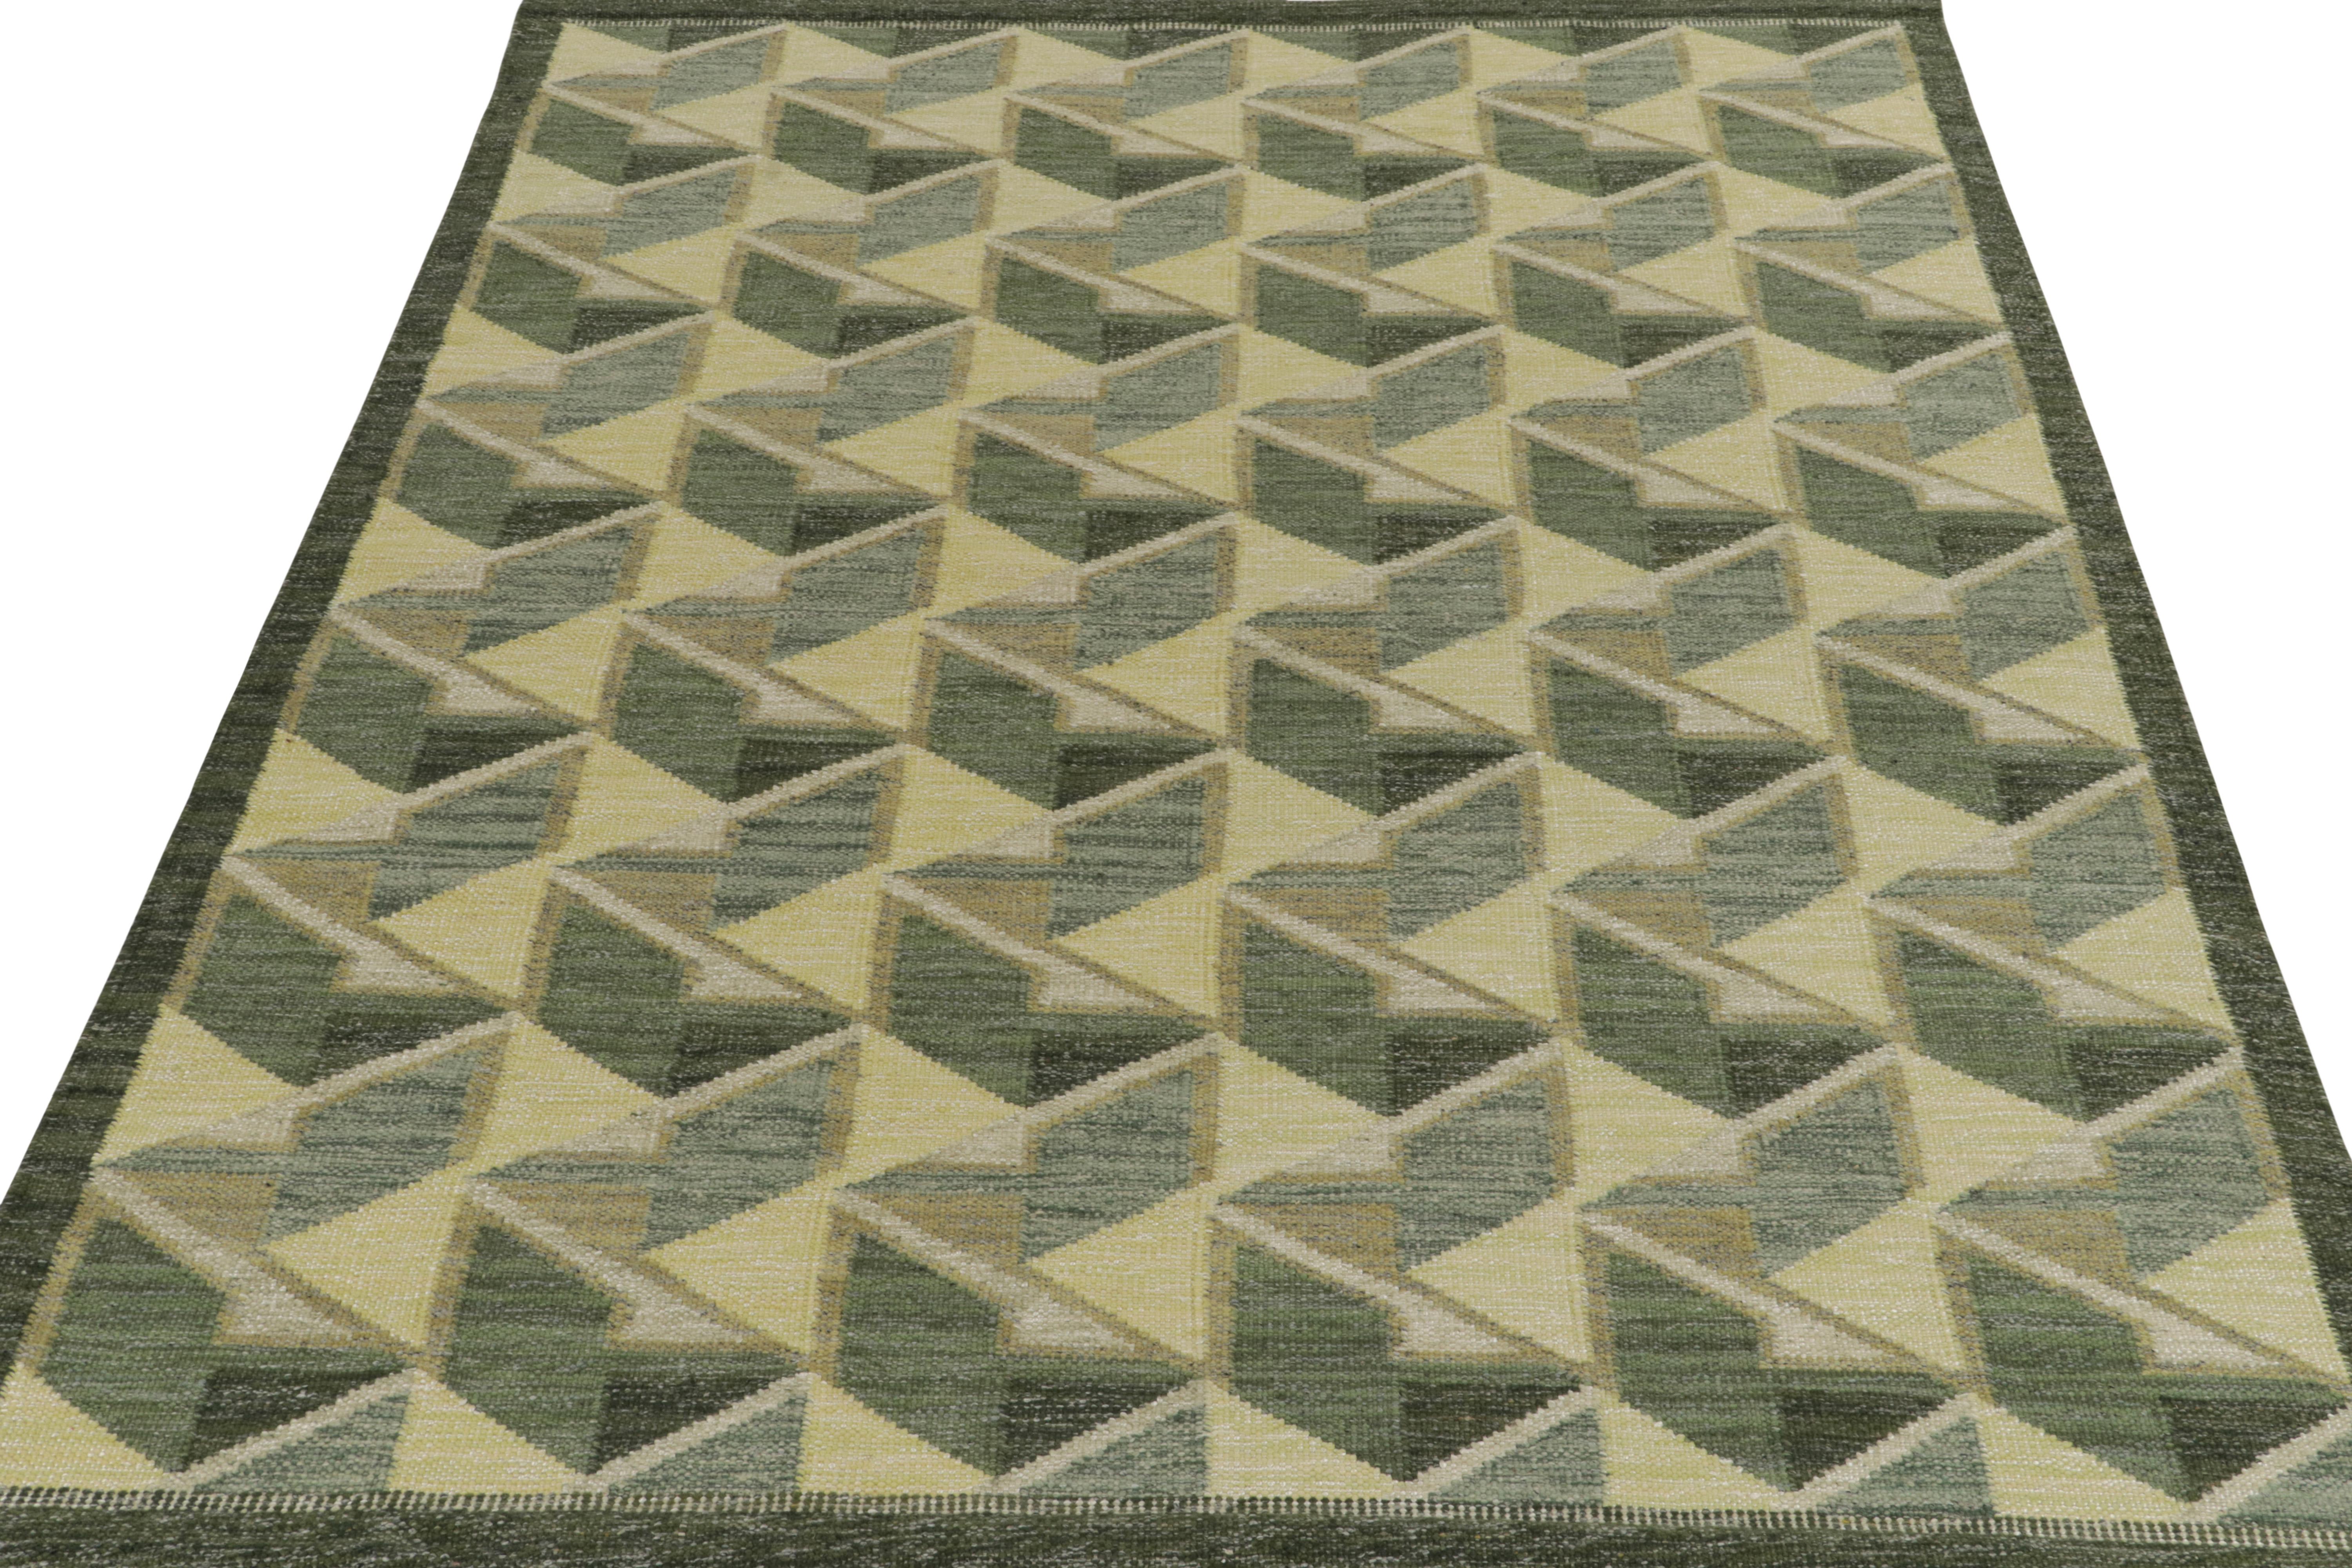 Der skandinavische Kelimteppich von Rug & Kilim aus unserer berühmten Flachgewebekollektion. Dieser 8x10 große Teppich hat die Finesse der schwedischen Ästhetik mit einem eleganten geometrischen Muster, das einen 3D-Eindruck in verschiedenen Grün-